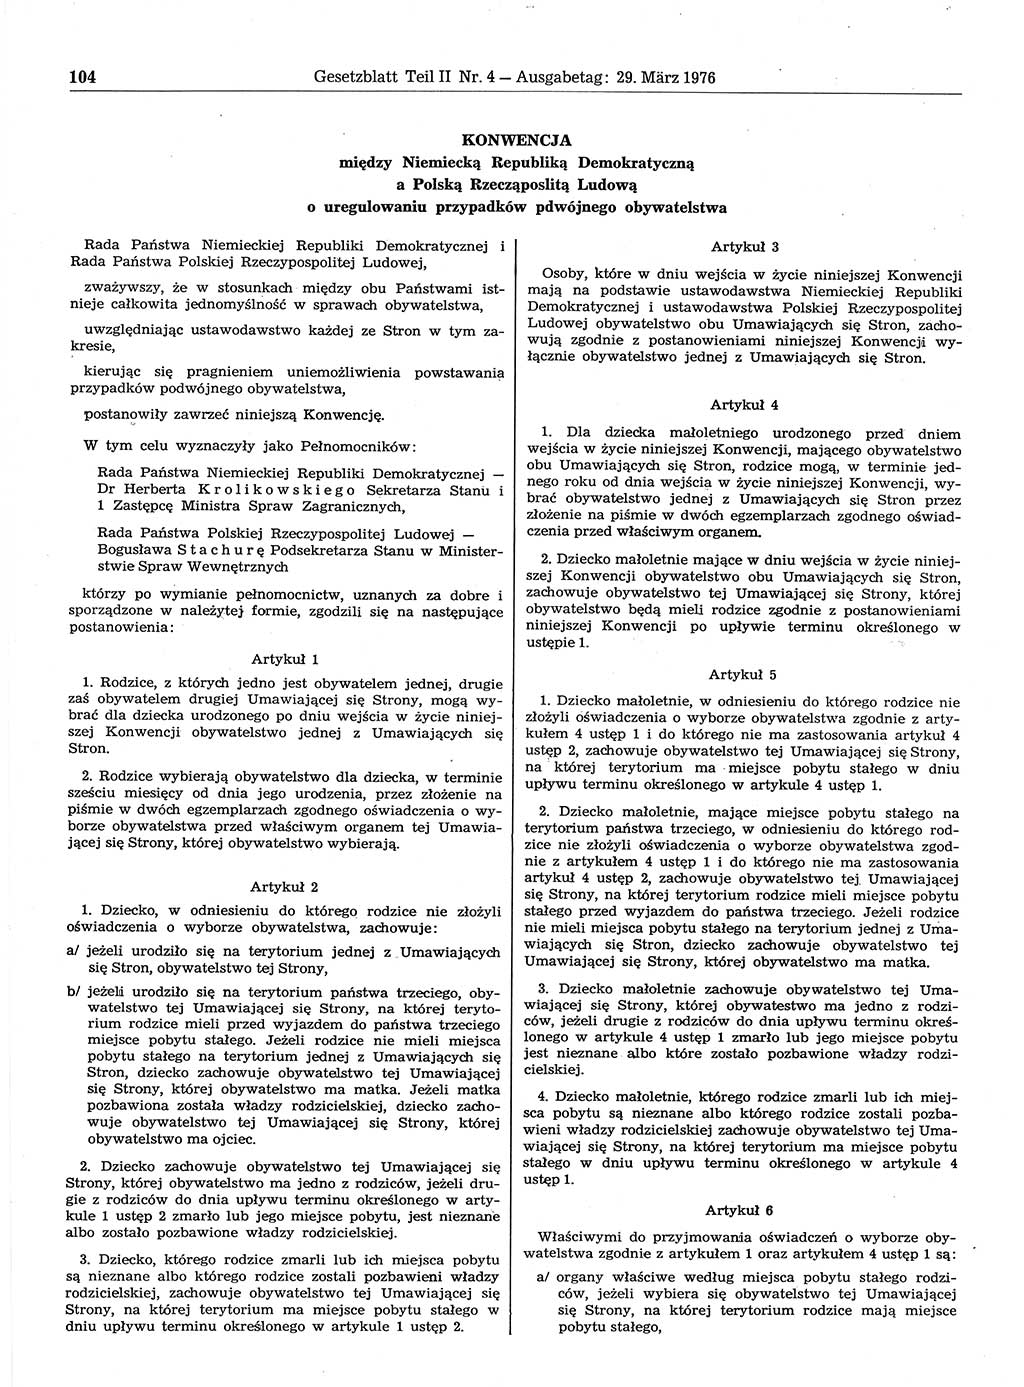 Gesetzblatt (GBl.) der Deutschen Demokratischen Republik (DDR) Teil ⅠⅠ 1976, Seite 104 (GBl. DDR ⅠⅠ 1976, S. 104)